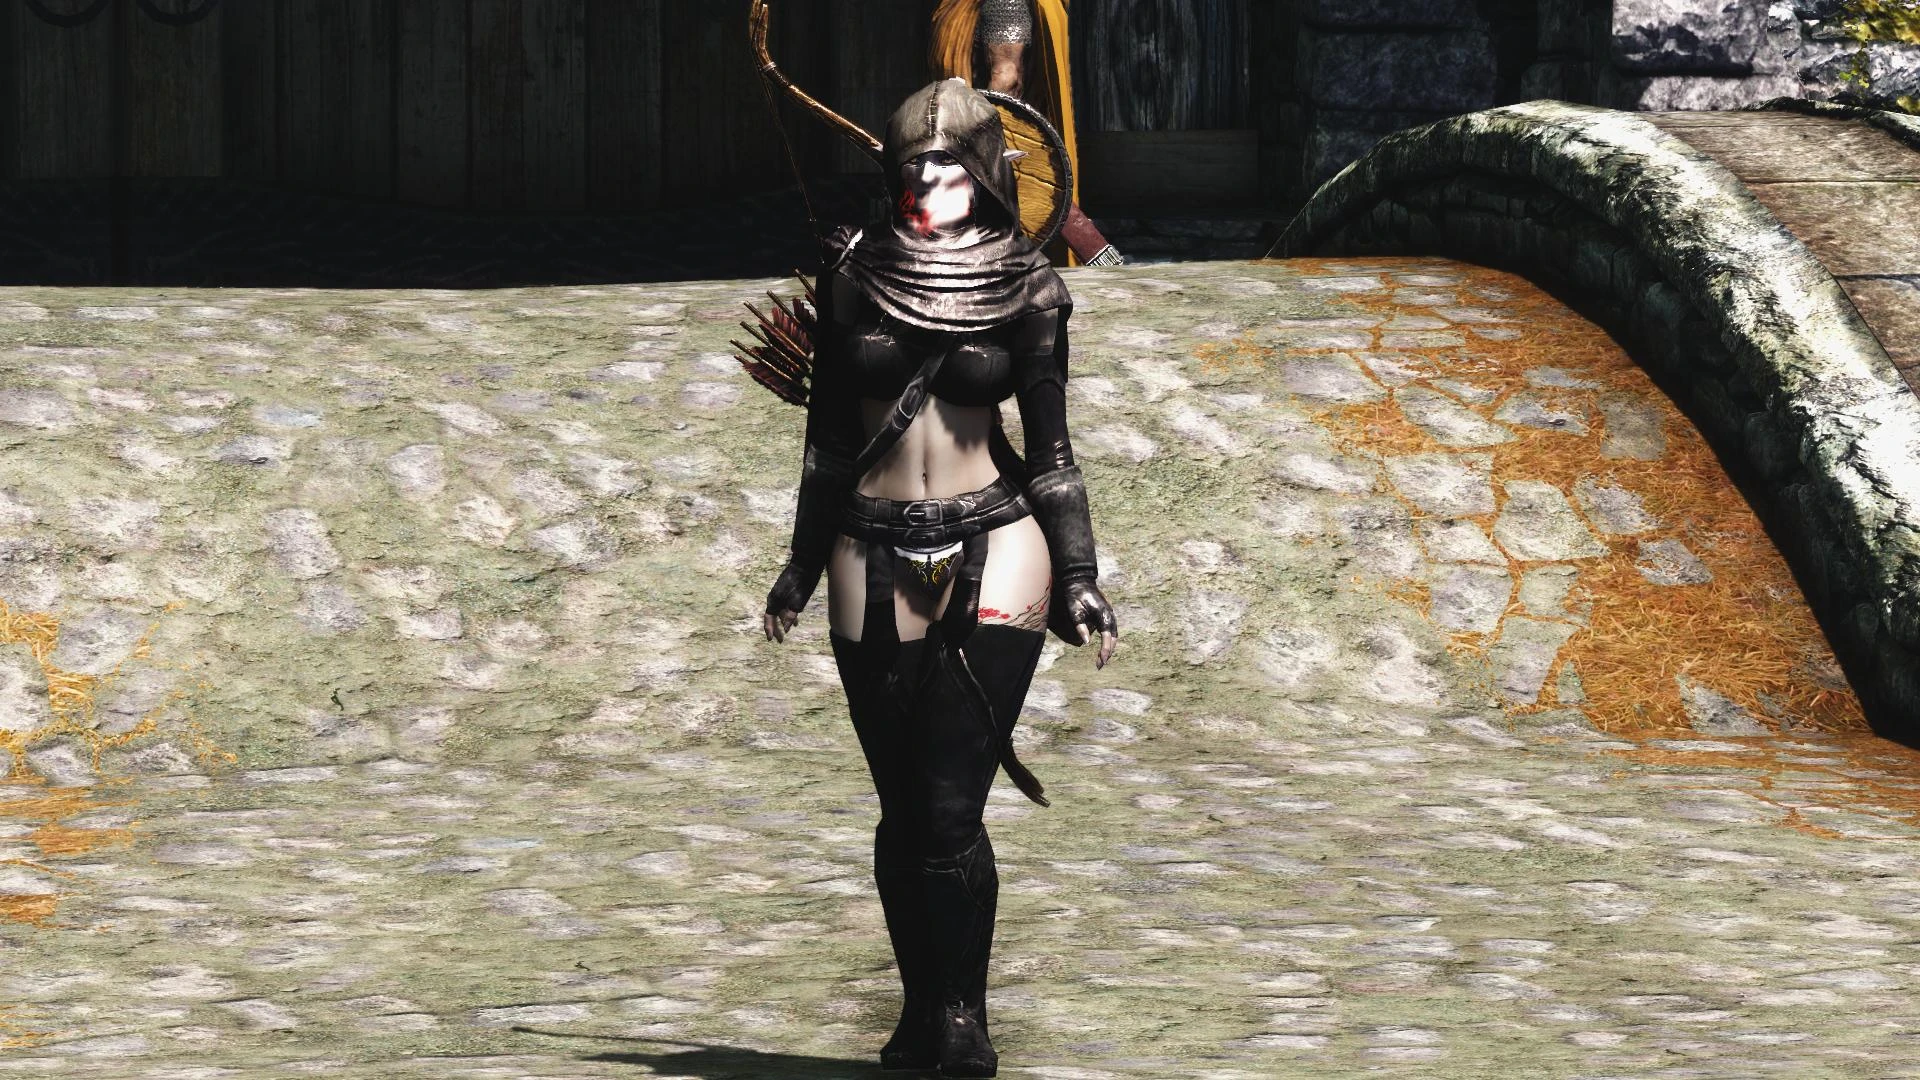 true thief armor at skyrim nexus mods and community skyrim mods female skyr...